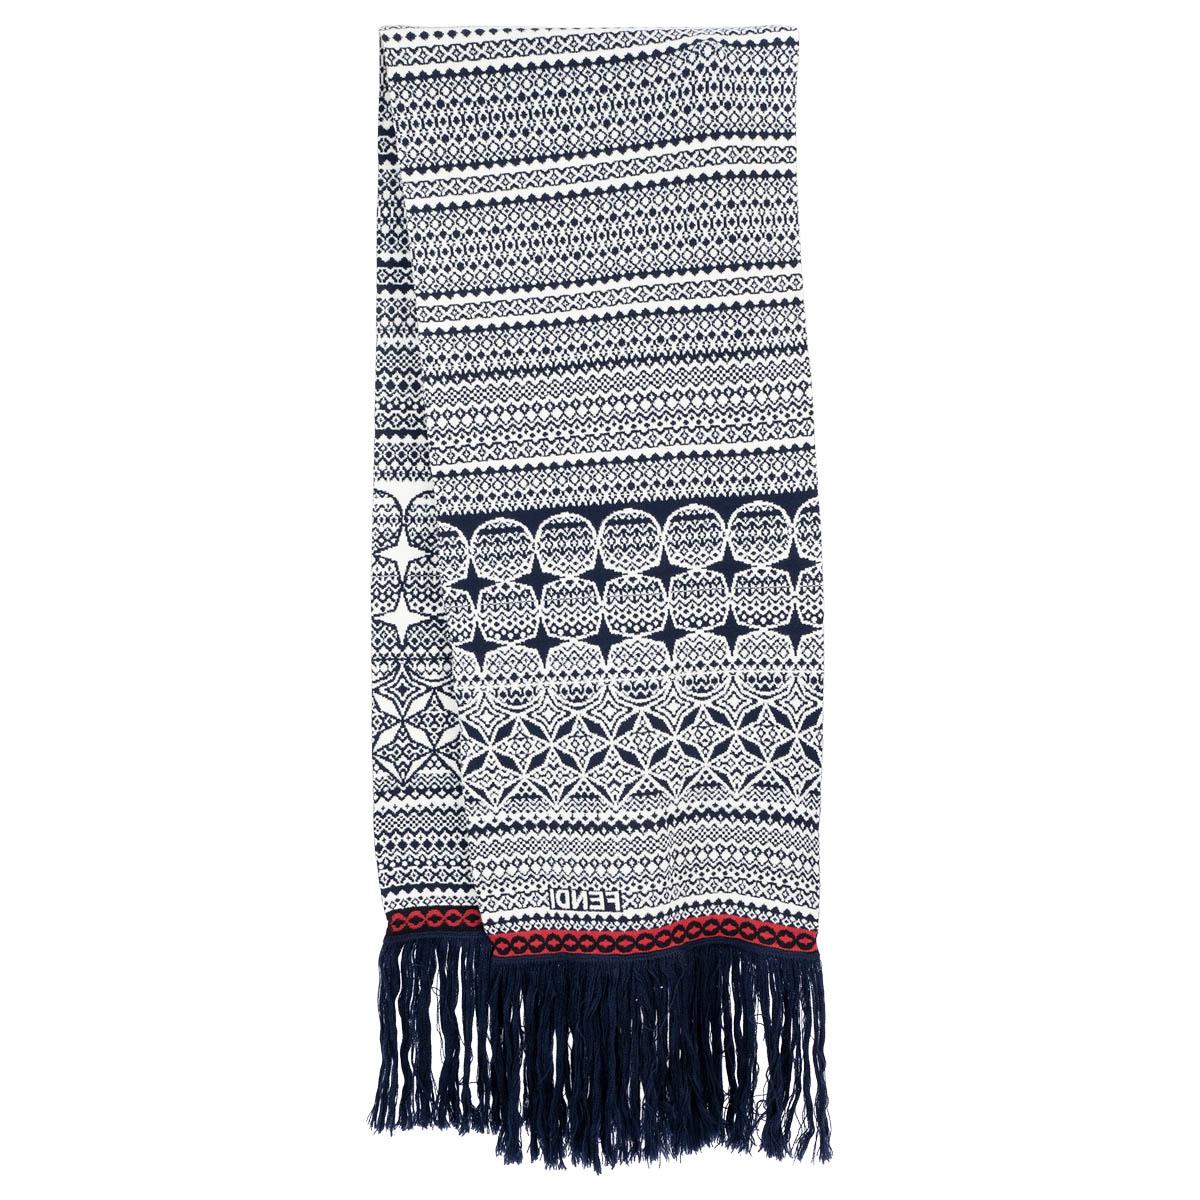 68 Sjaal ideas  louis vuitton scarf, fashion, lv scarf